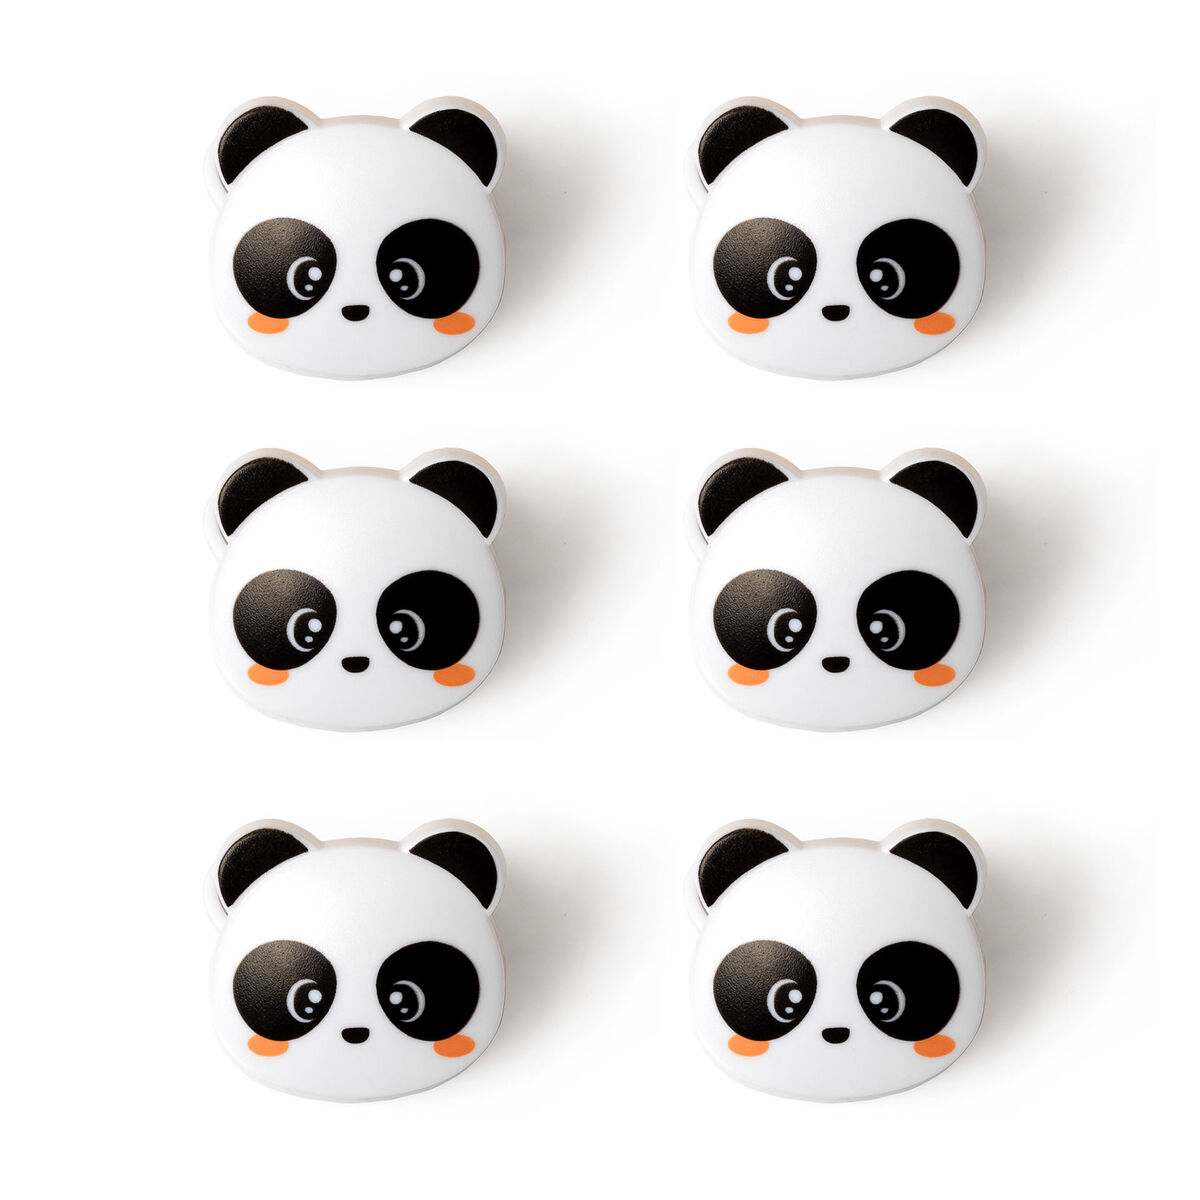 LEGAMI Set mit 6 Beutel Clips Panda 2 | Gift ideas for panda fans